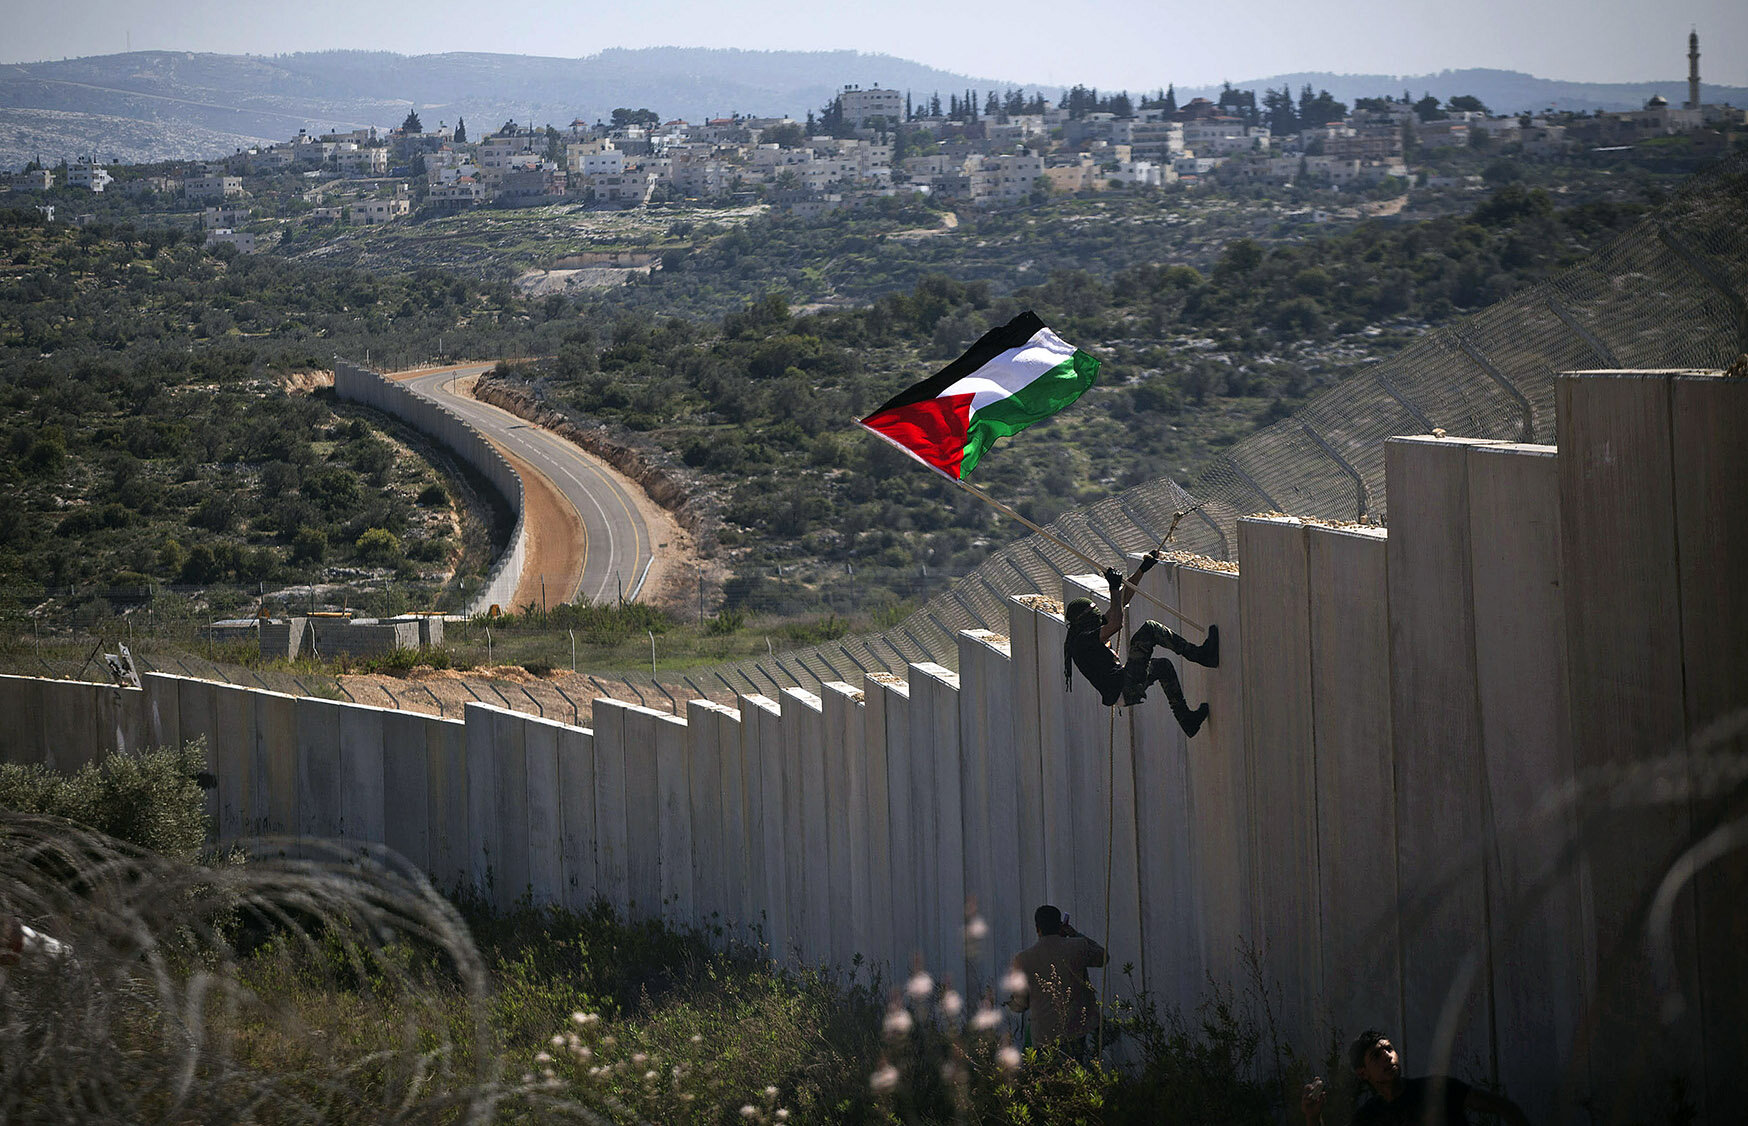 El muro de separación de Israel en Bil'in, donde un manifestante palestino planta una bandera, el asentamiento de Modi'in Illit al fondo (foto por cortesía de Oren Ziv, el Proyecto GroundTruth ).